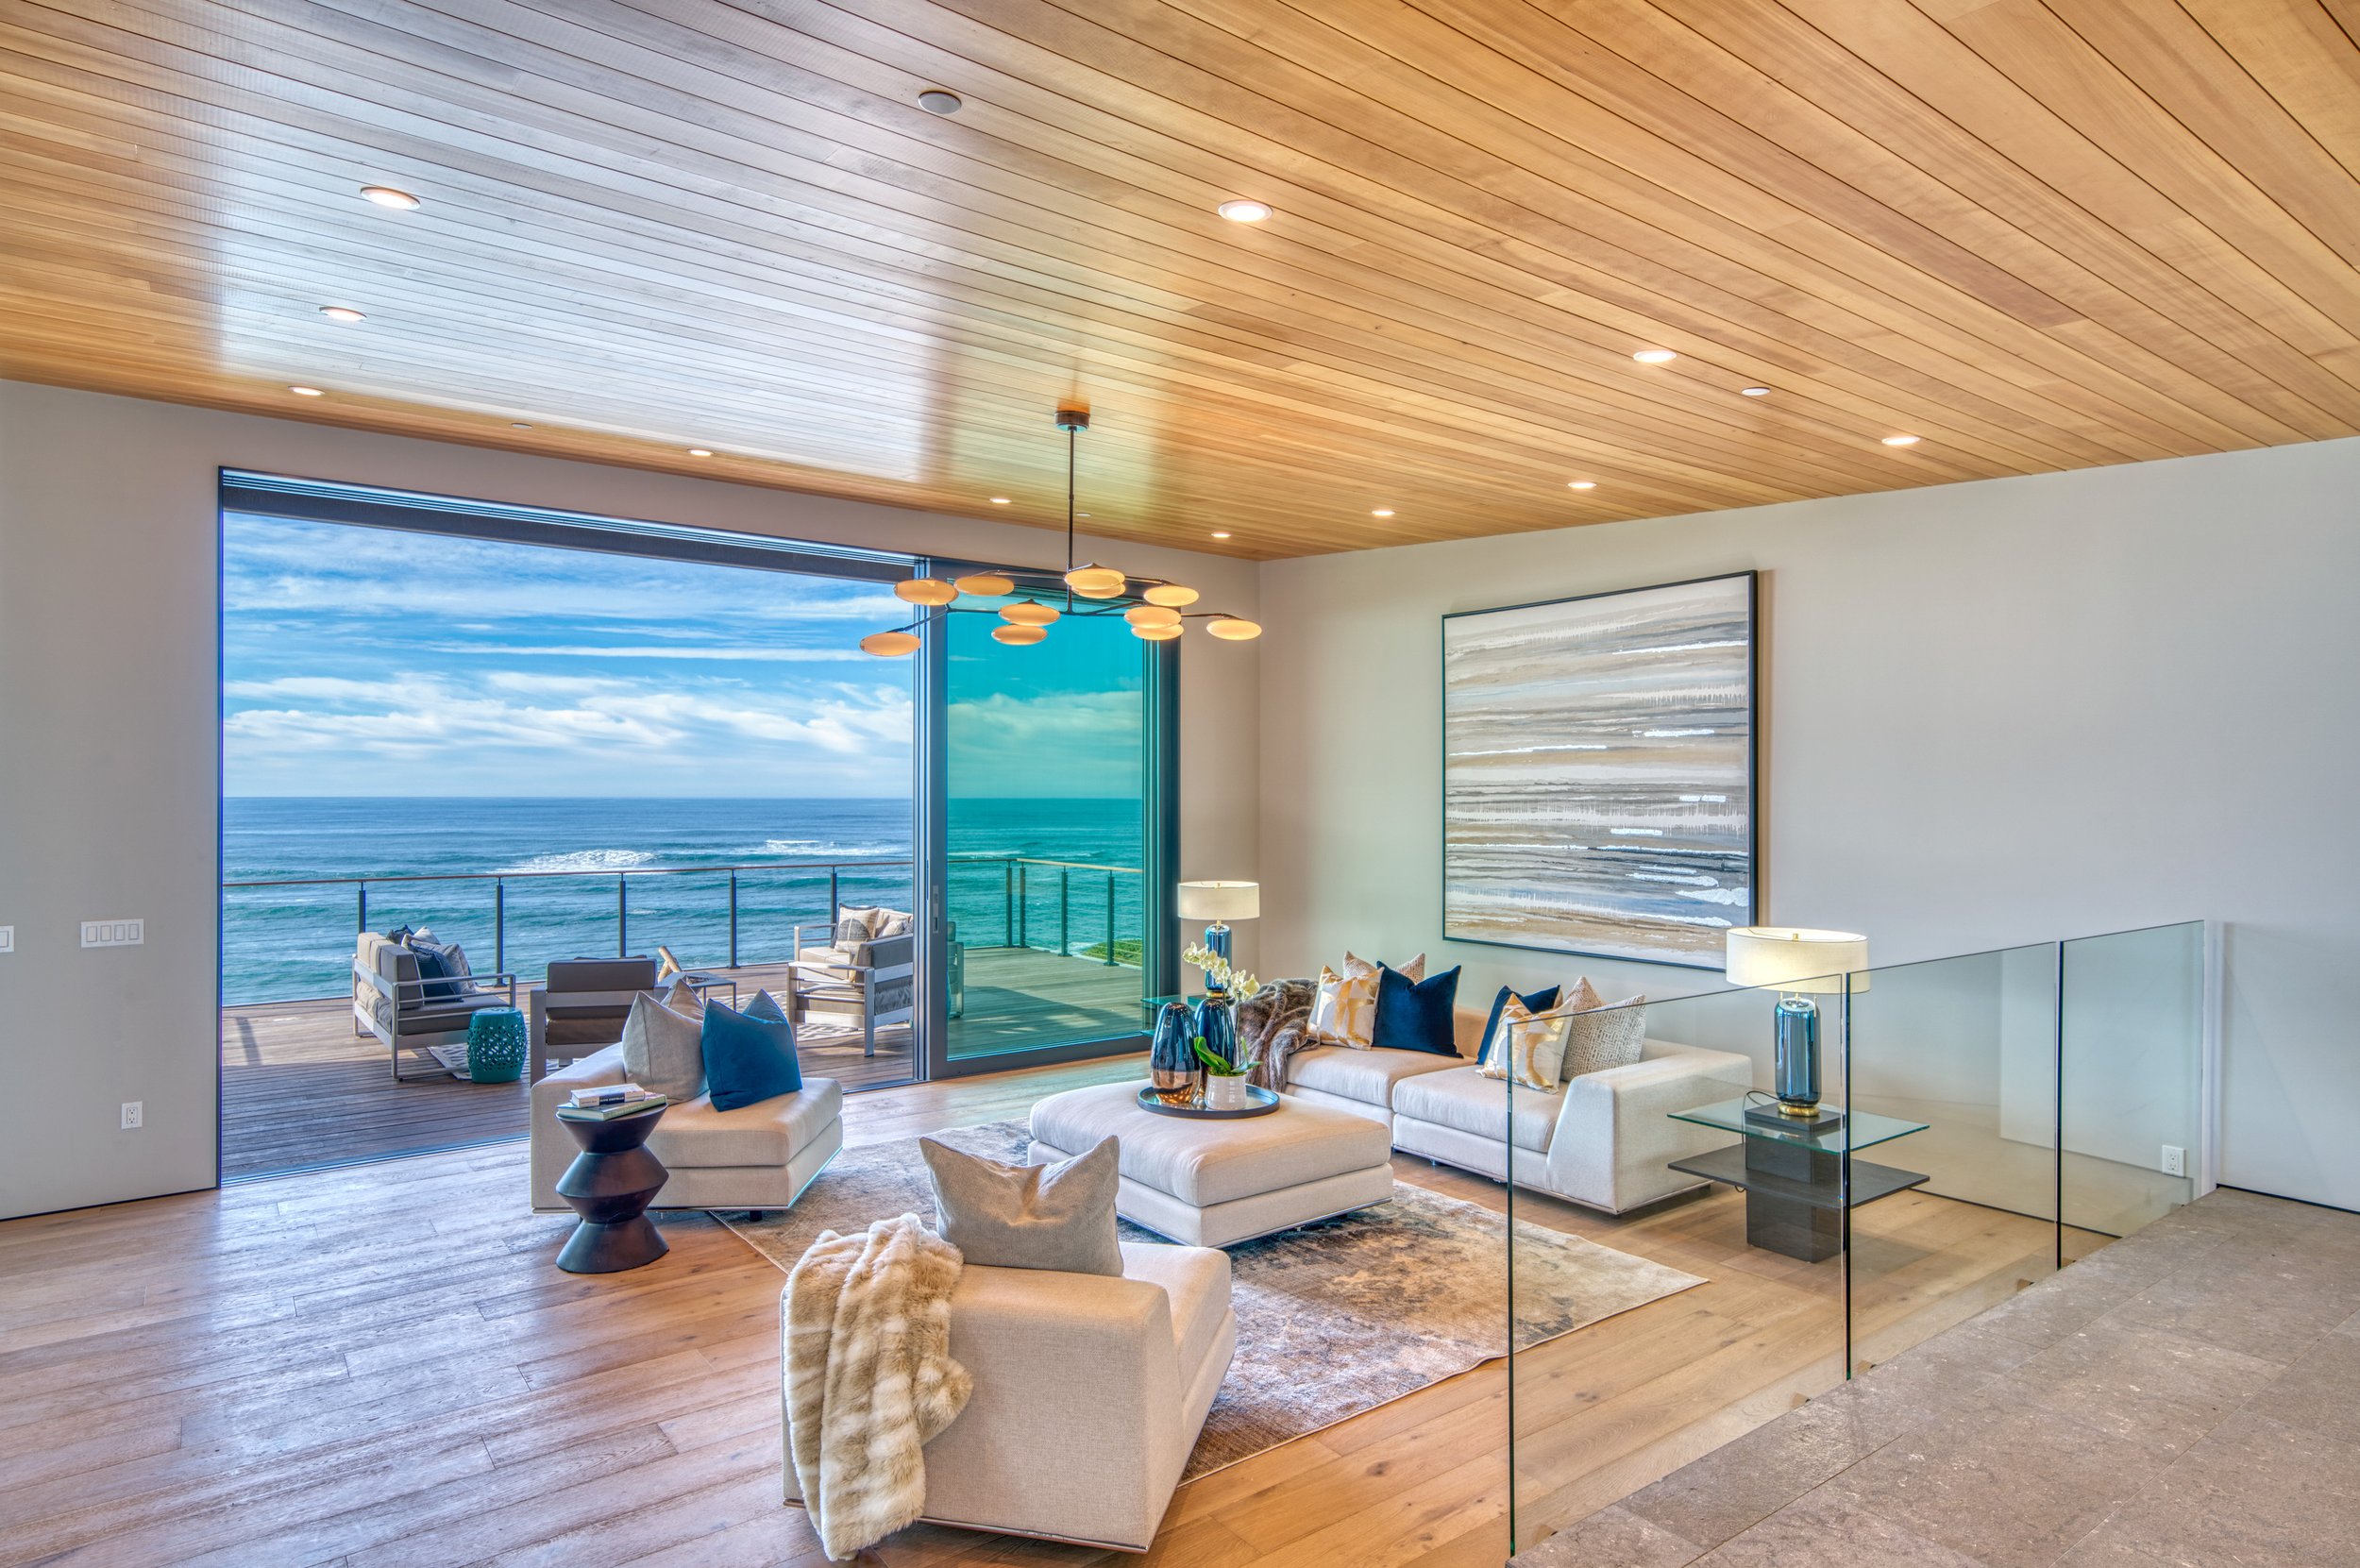 5-living-room-ocean-view-oak-floors.jpg